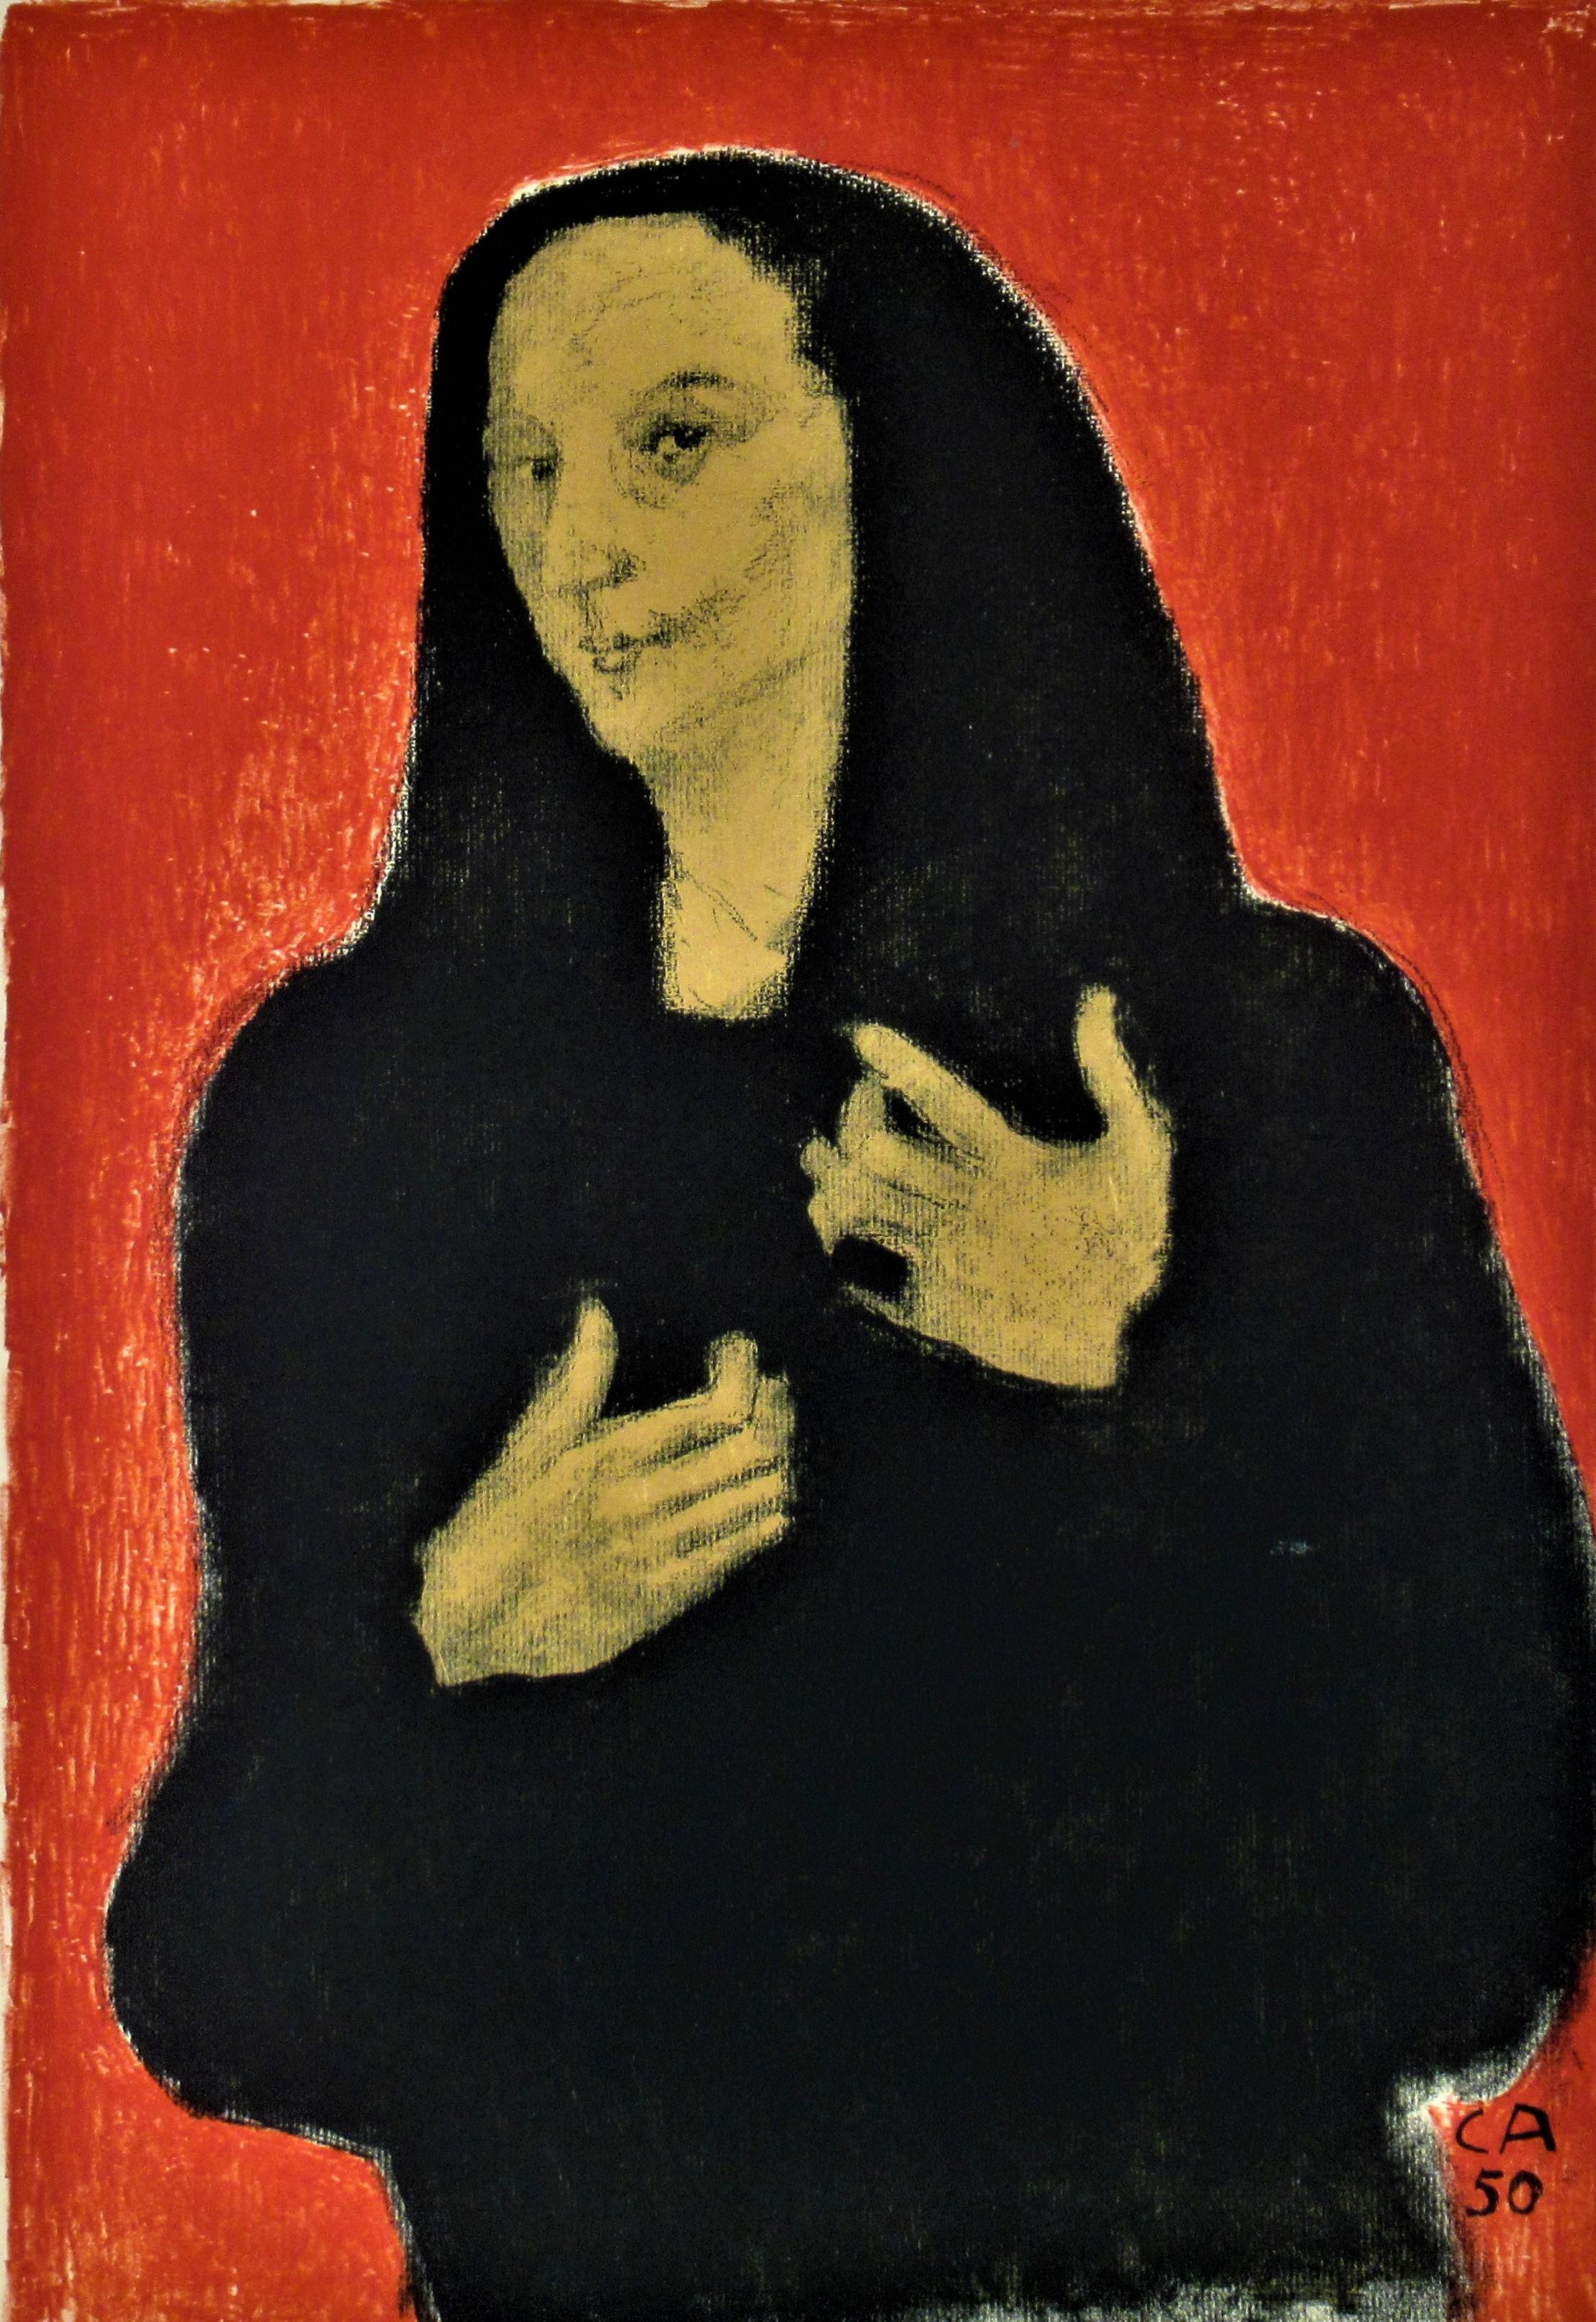 Portrat der Bildhauerin Germaine Richier - Print by Cuno Amiet